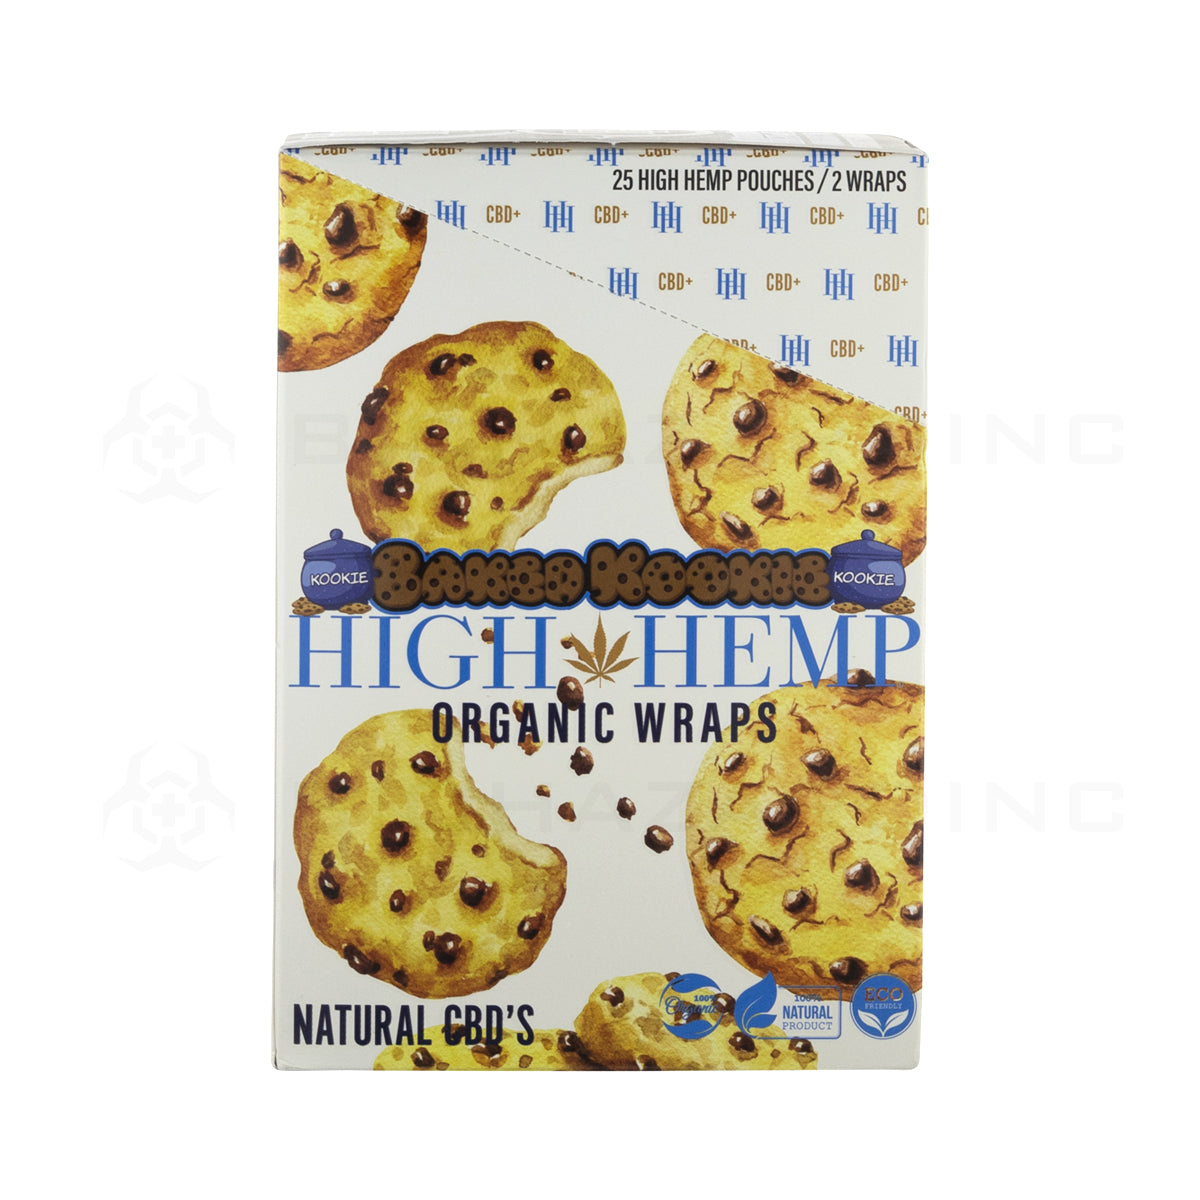 High Hemp | Organic Hemp Blunt Wraps | 100mm - Baked Kookie - 25 Count Hemp Wraps High Hemp   